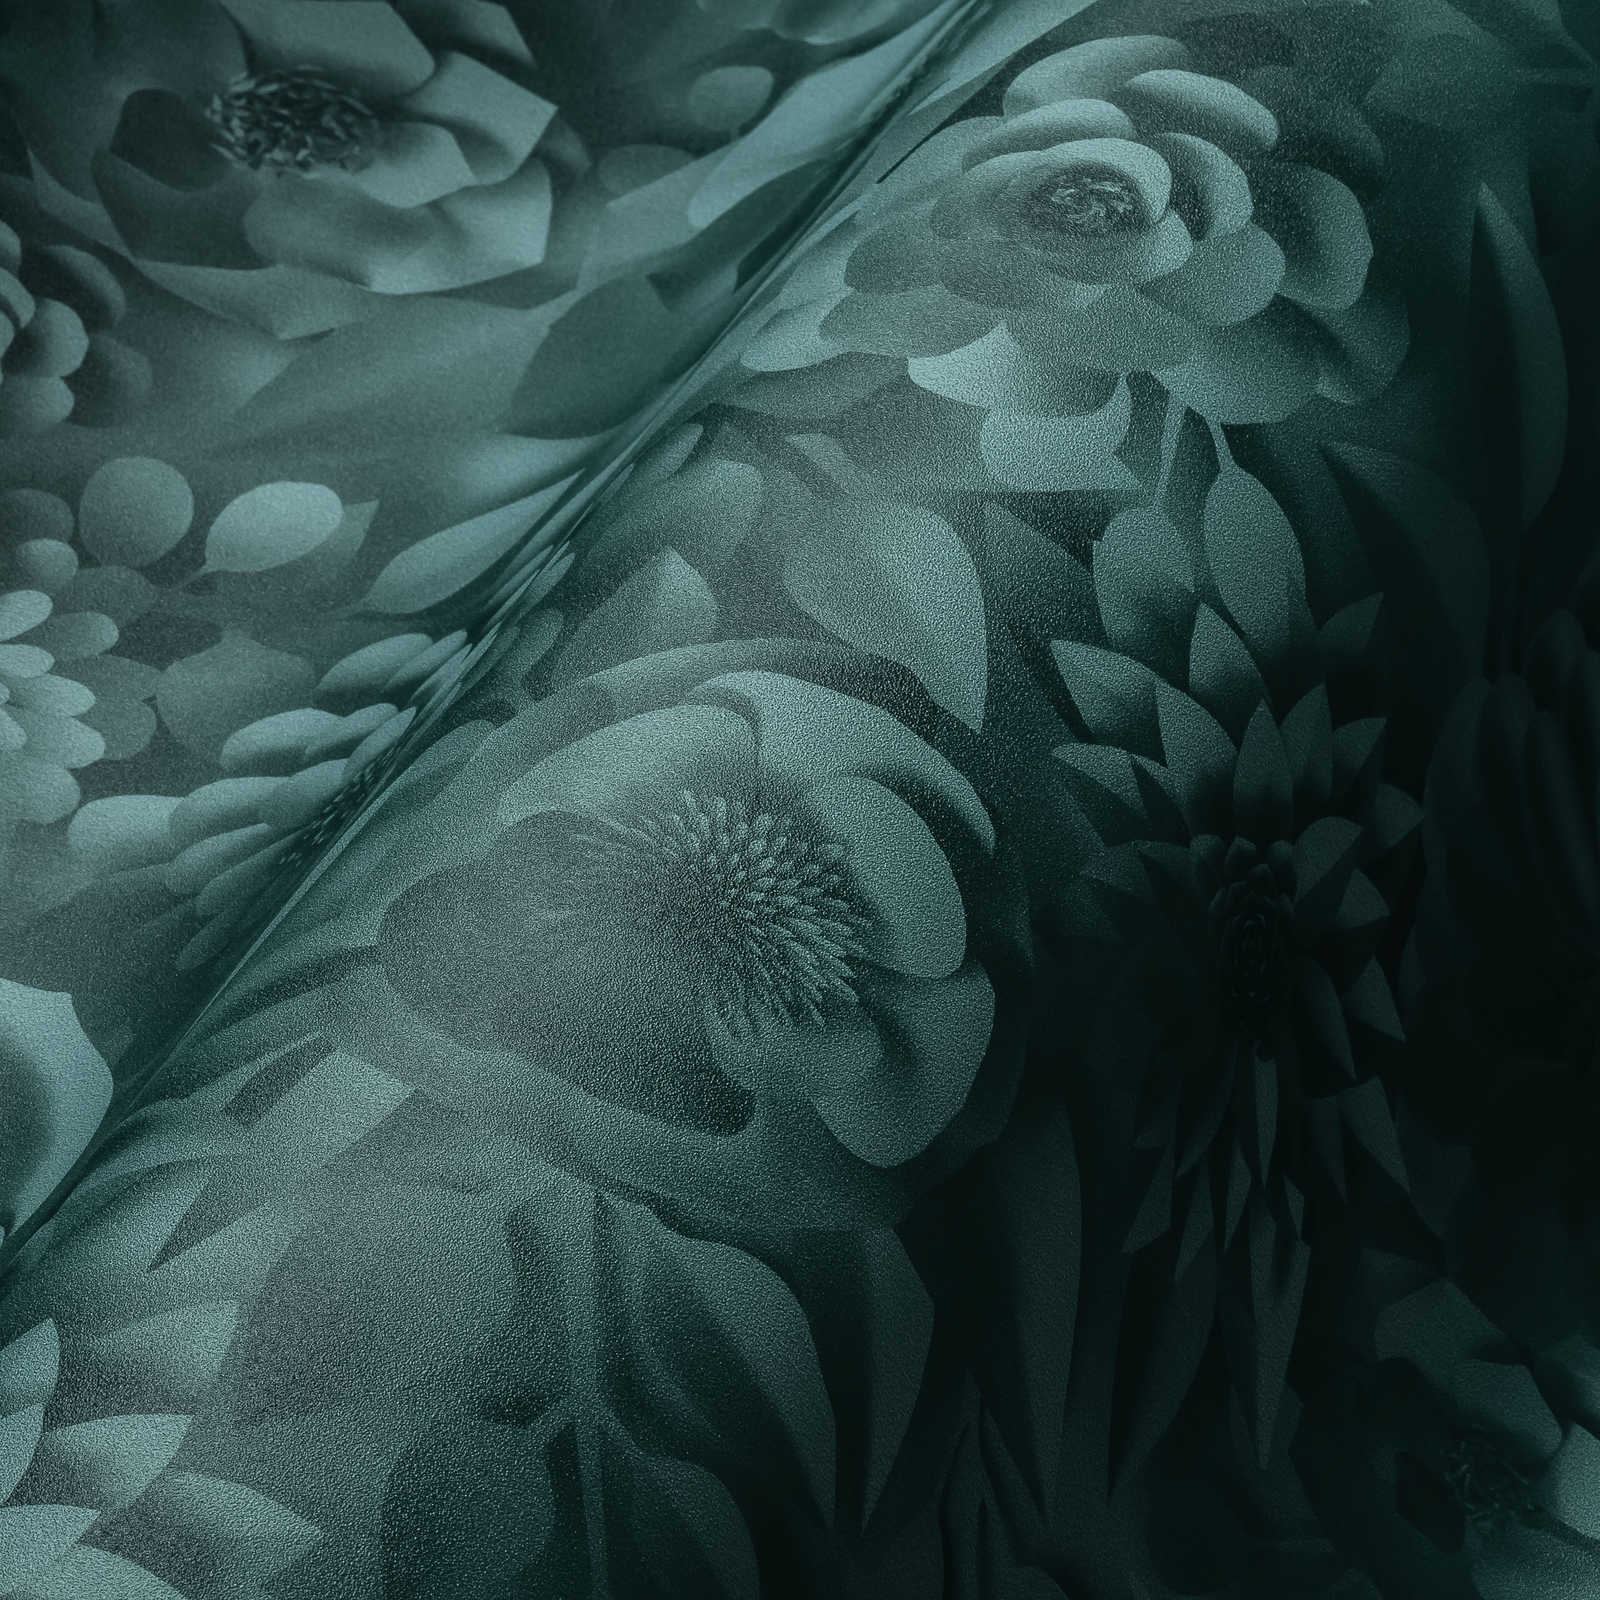             Papel pintado 3D con flores de papel, patrón floral gráfico - Verde
        